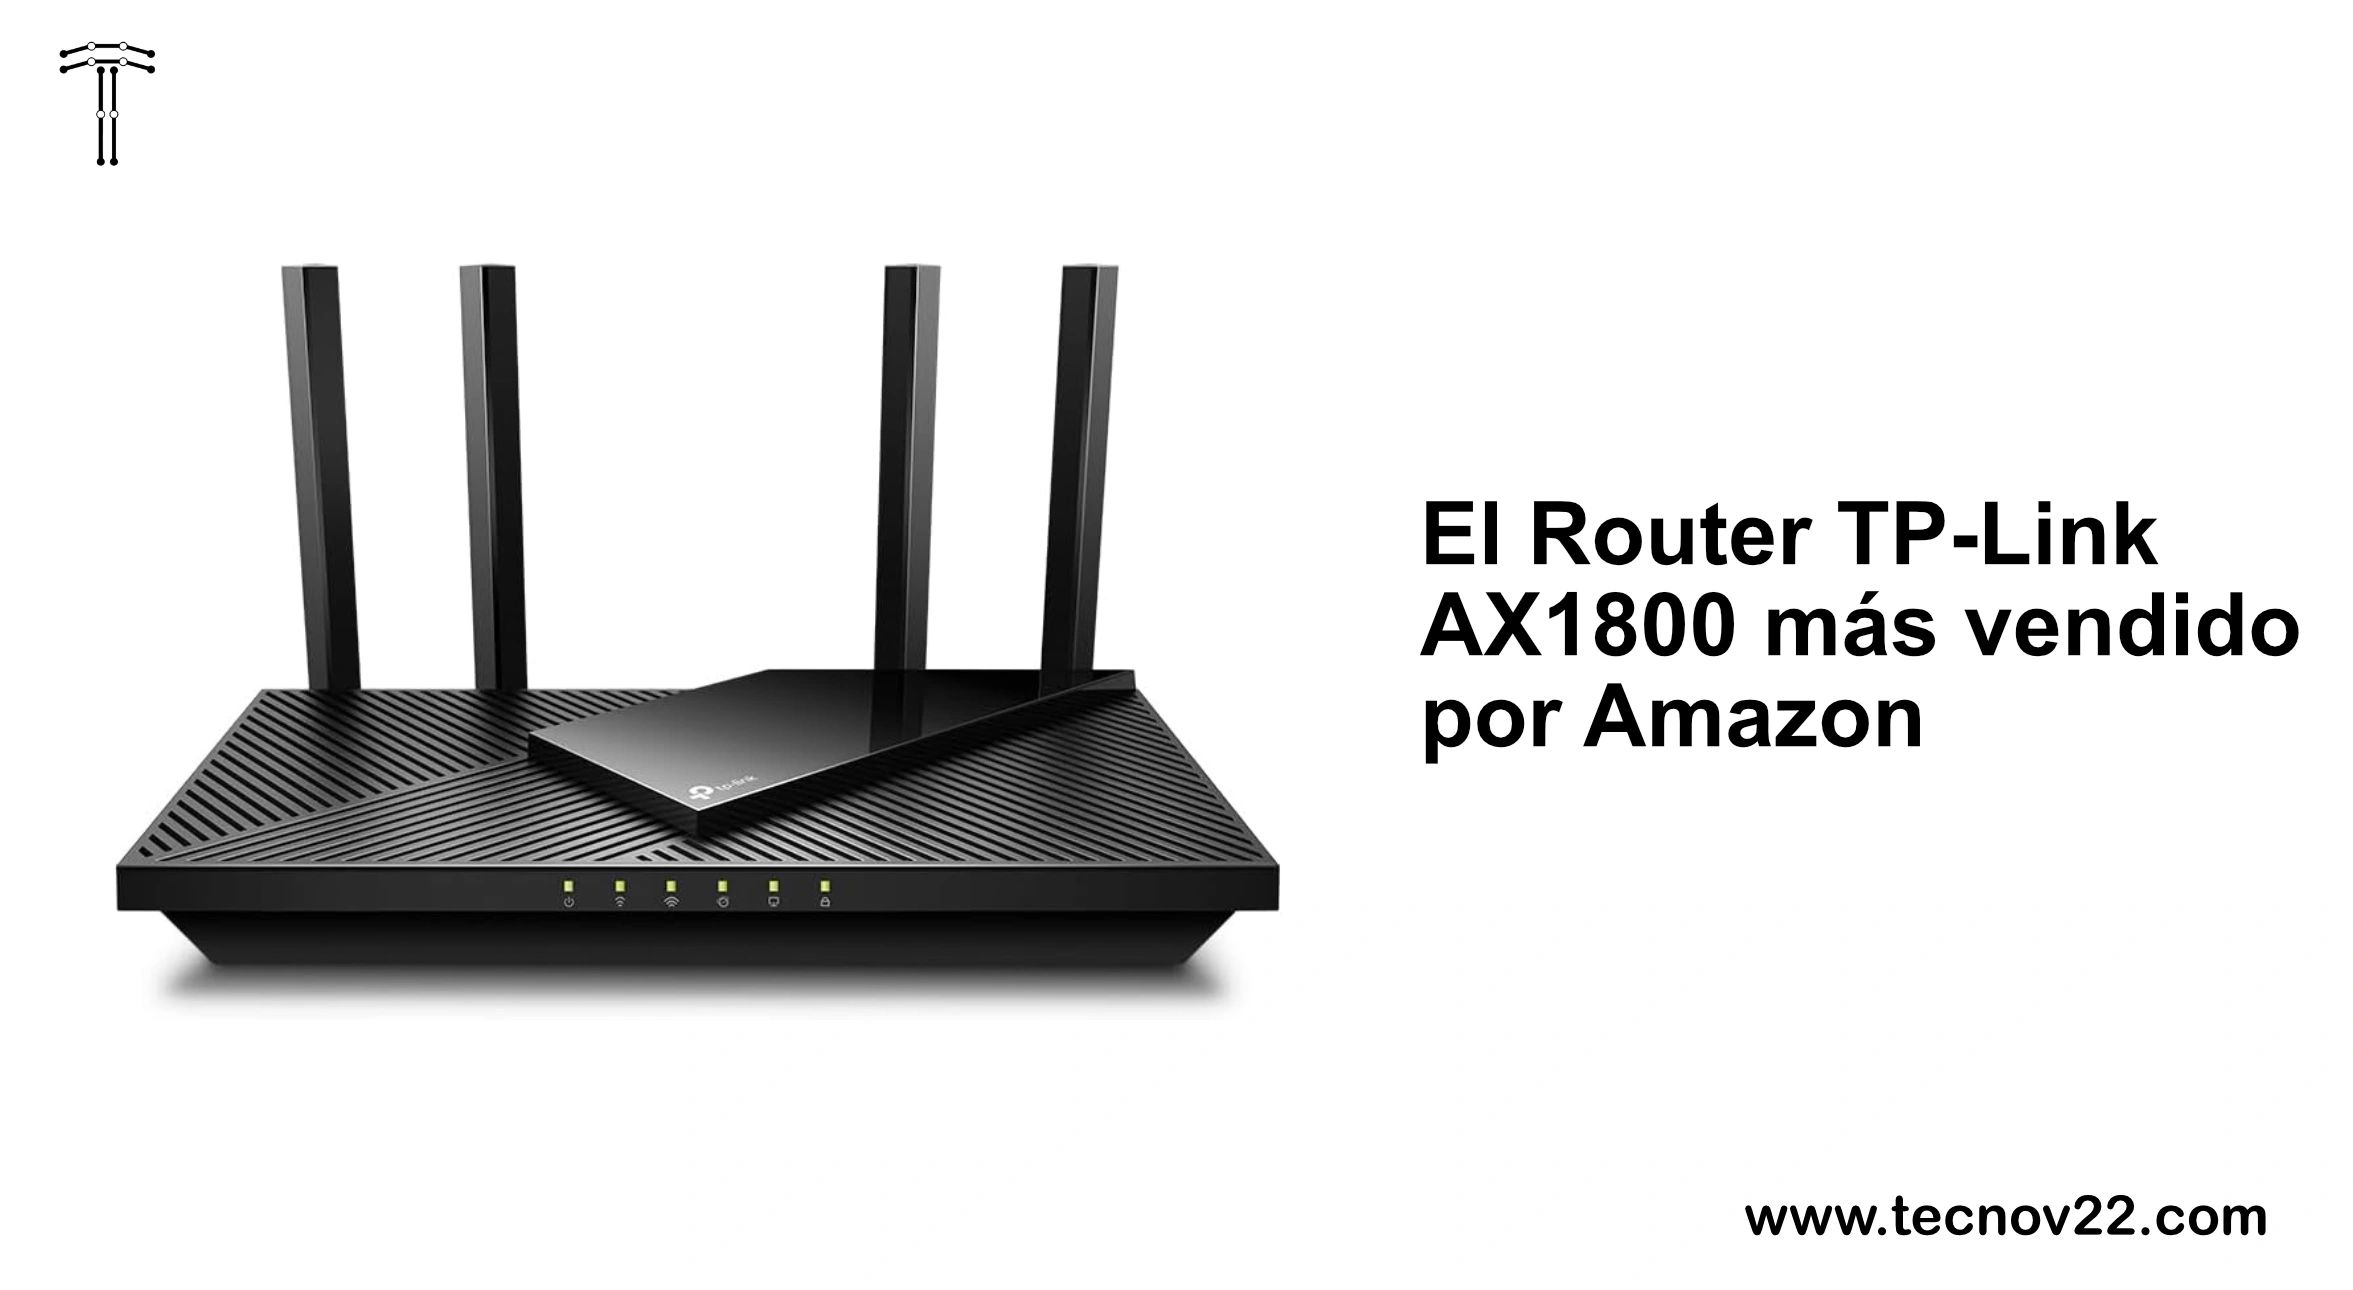 El Router TP-Link AX1800 más vendido por